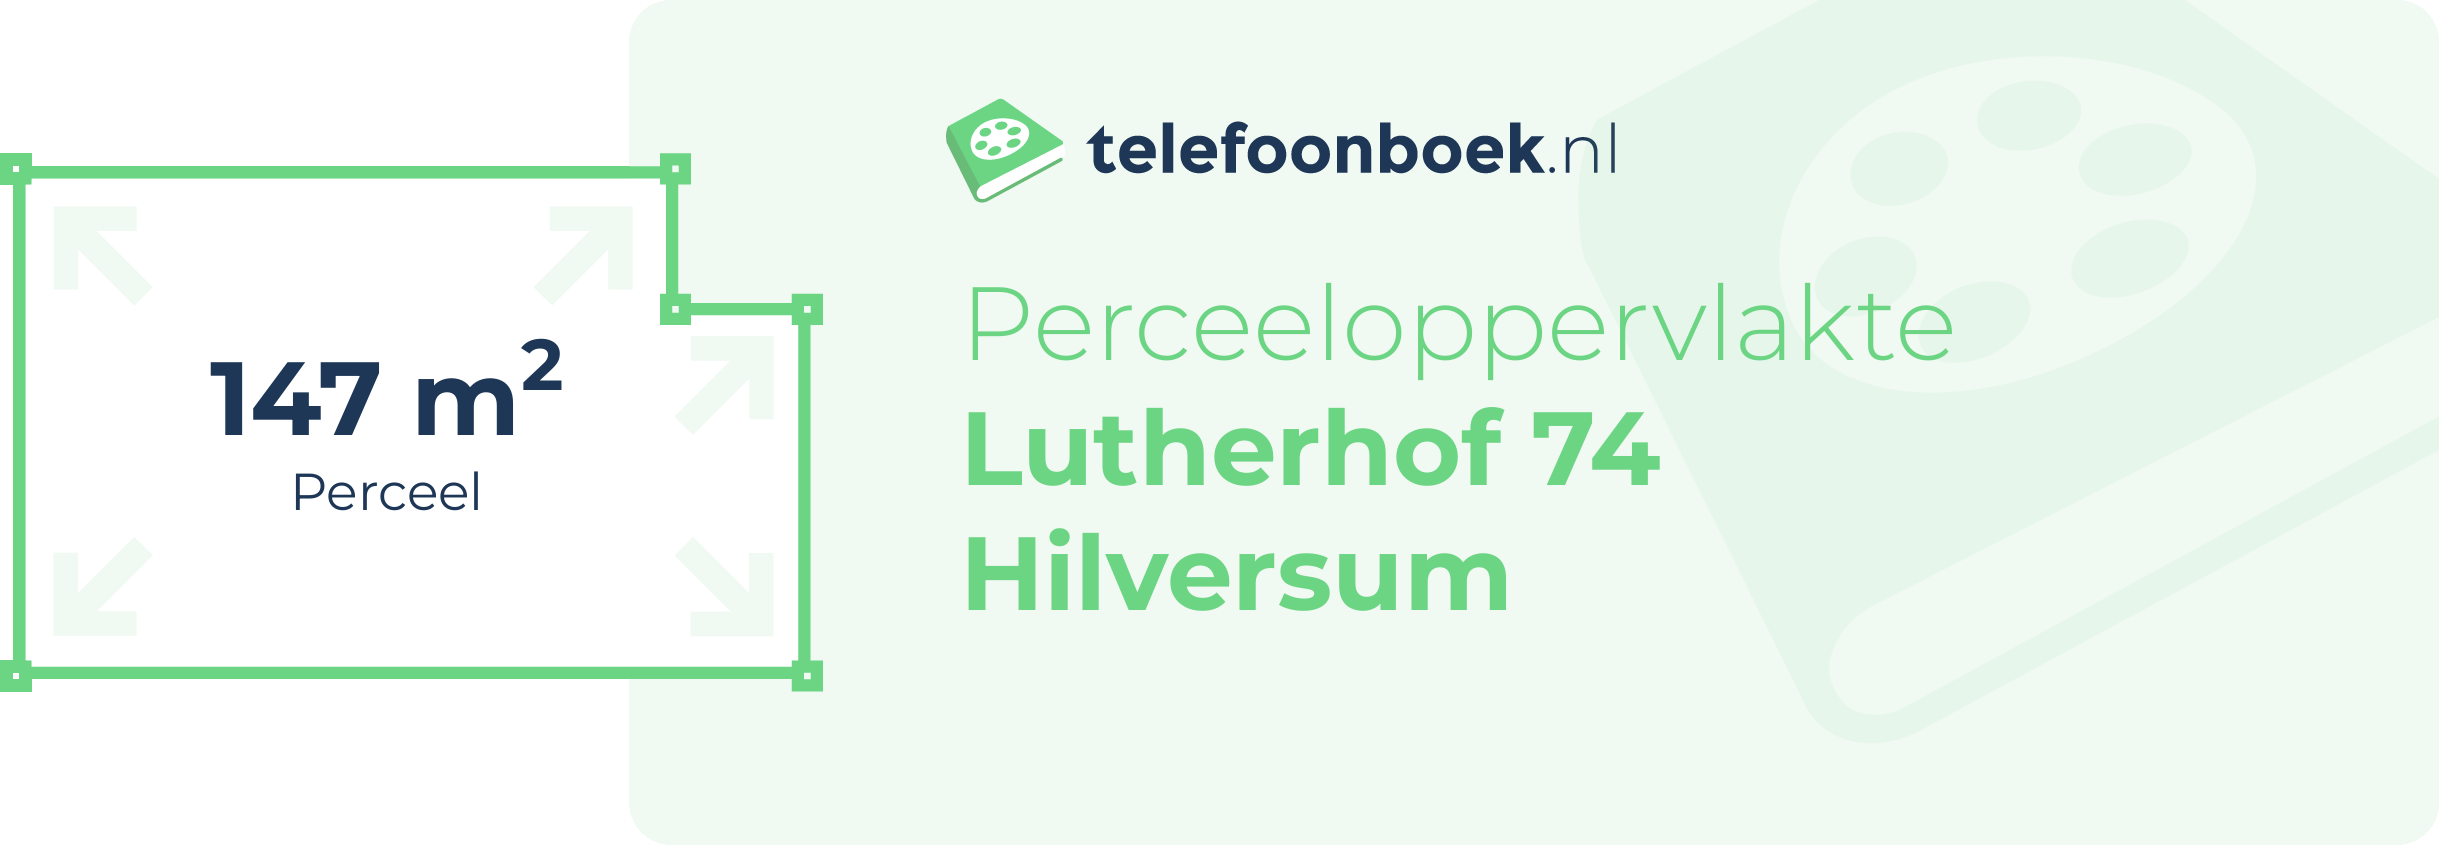 Perceeloppervlakte Lutherhof 74 Hilversum